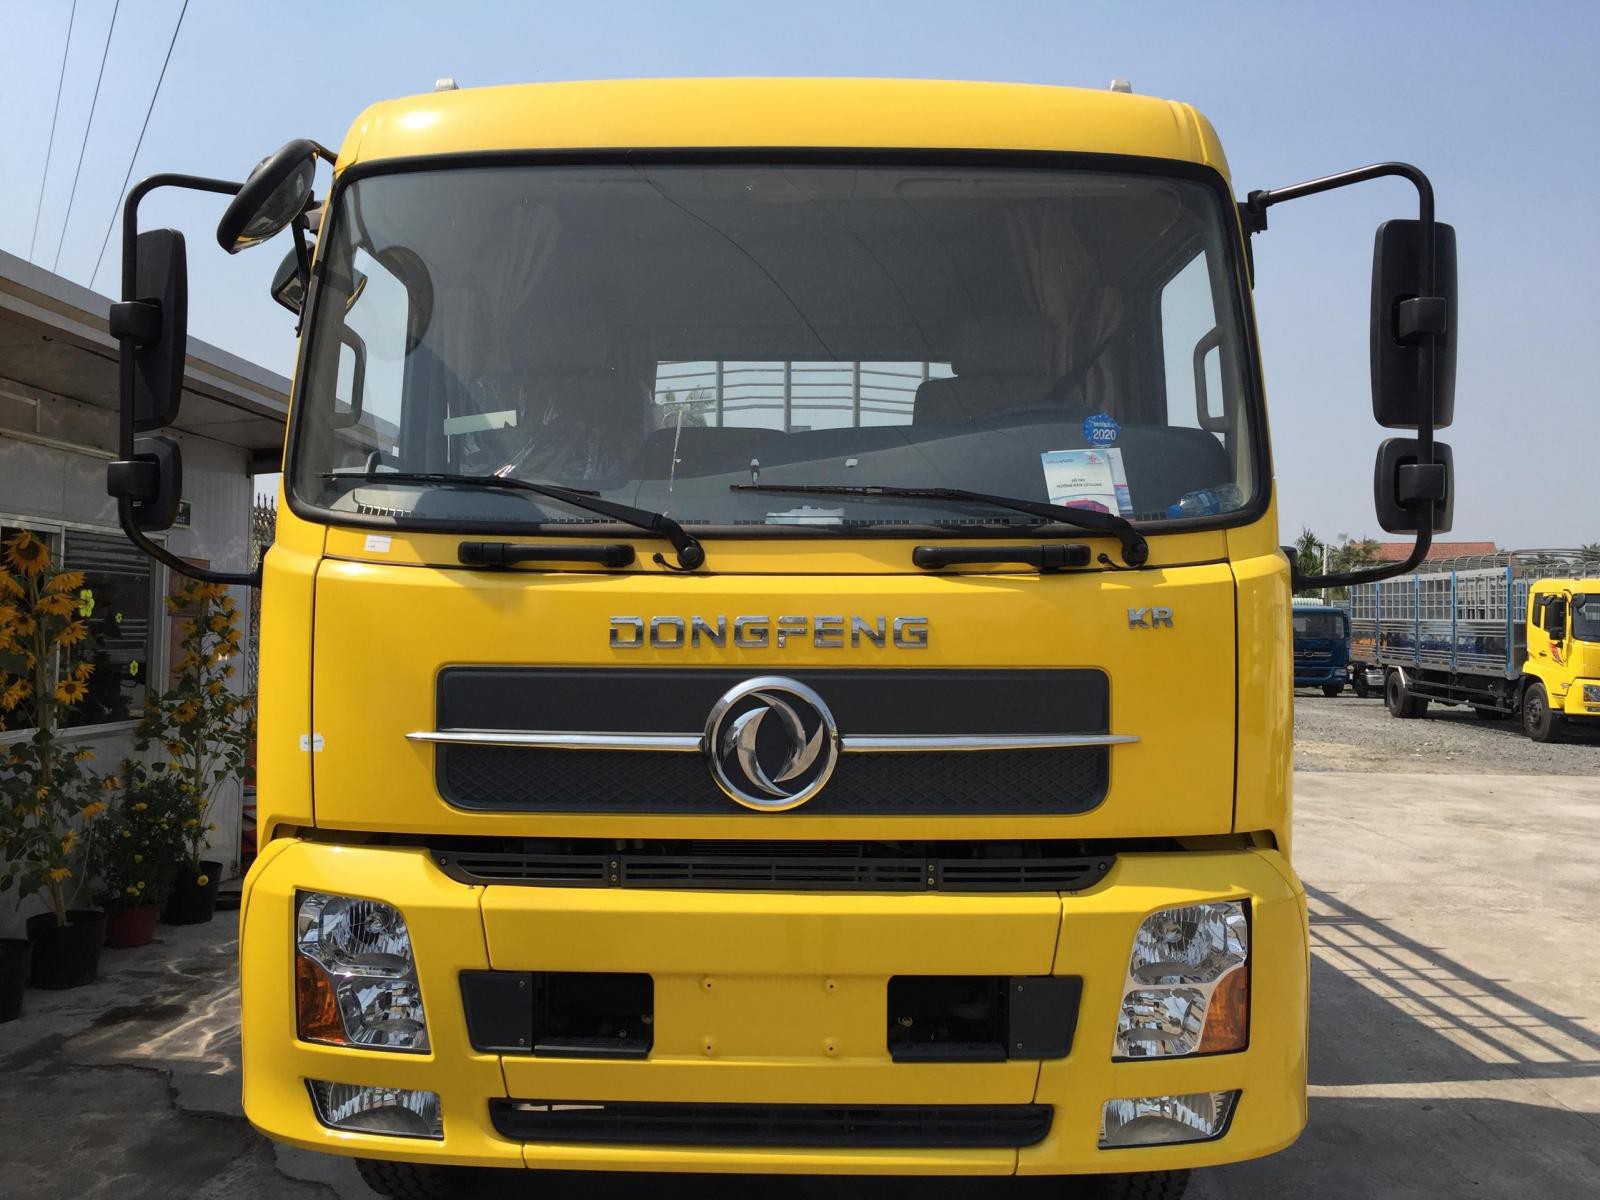 Bán xe tải Dongfeng Hoàng Huy B180 tải 9 tấn thùng dài 7m5 giá rẻ bảo hành chính hãng